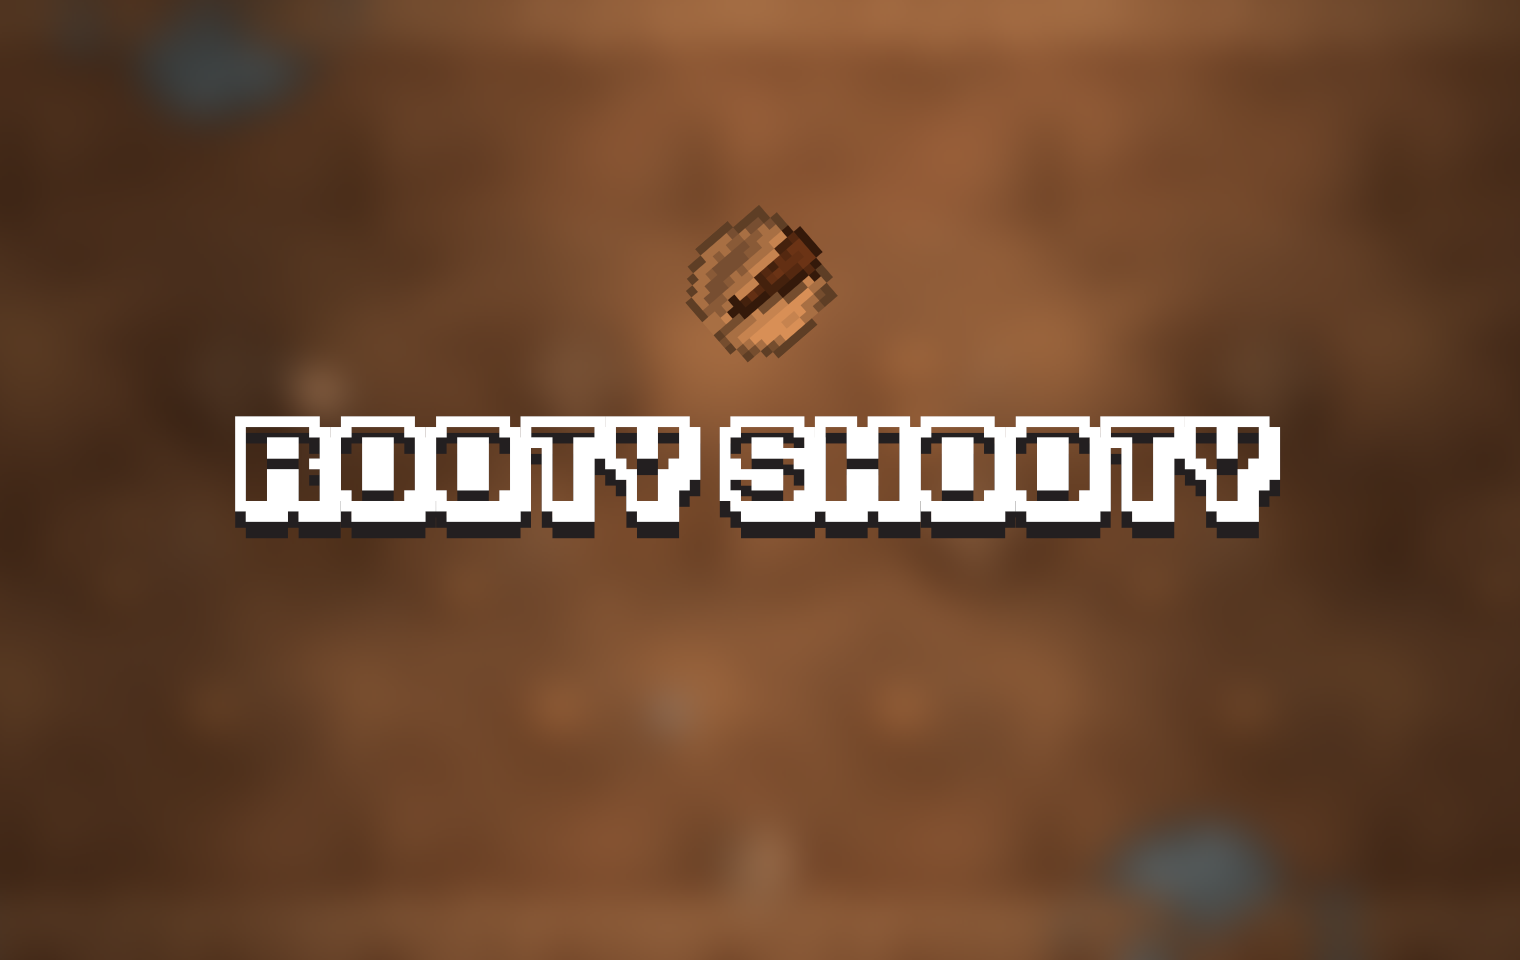 Rooty Shooty